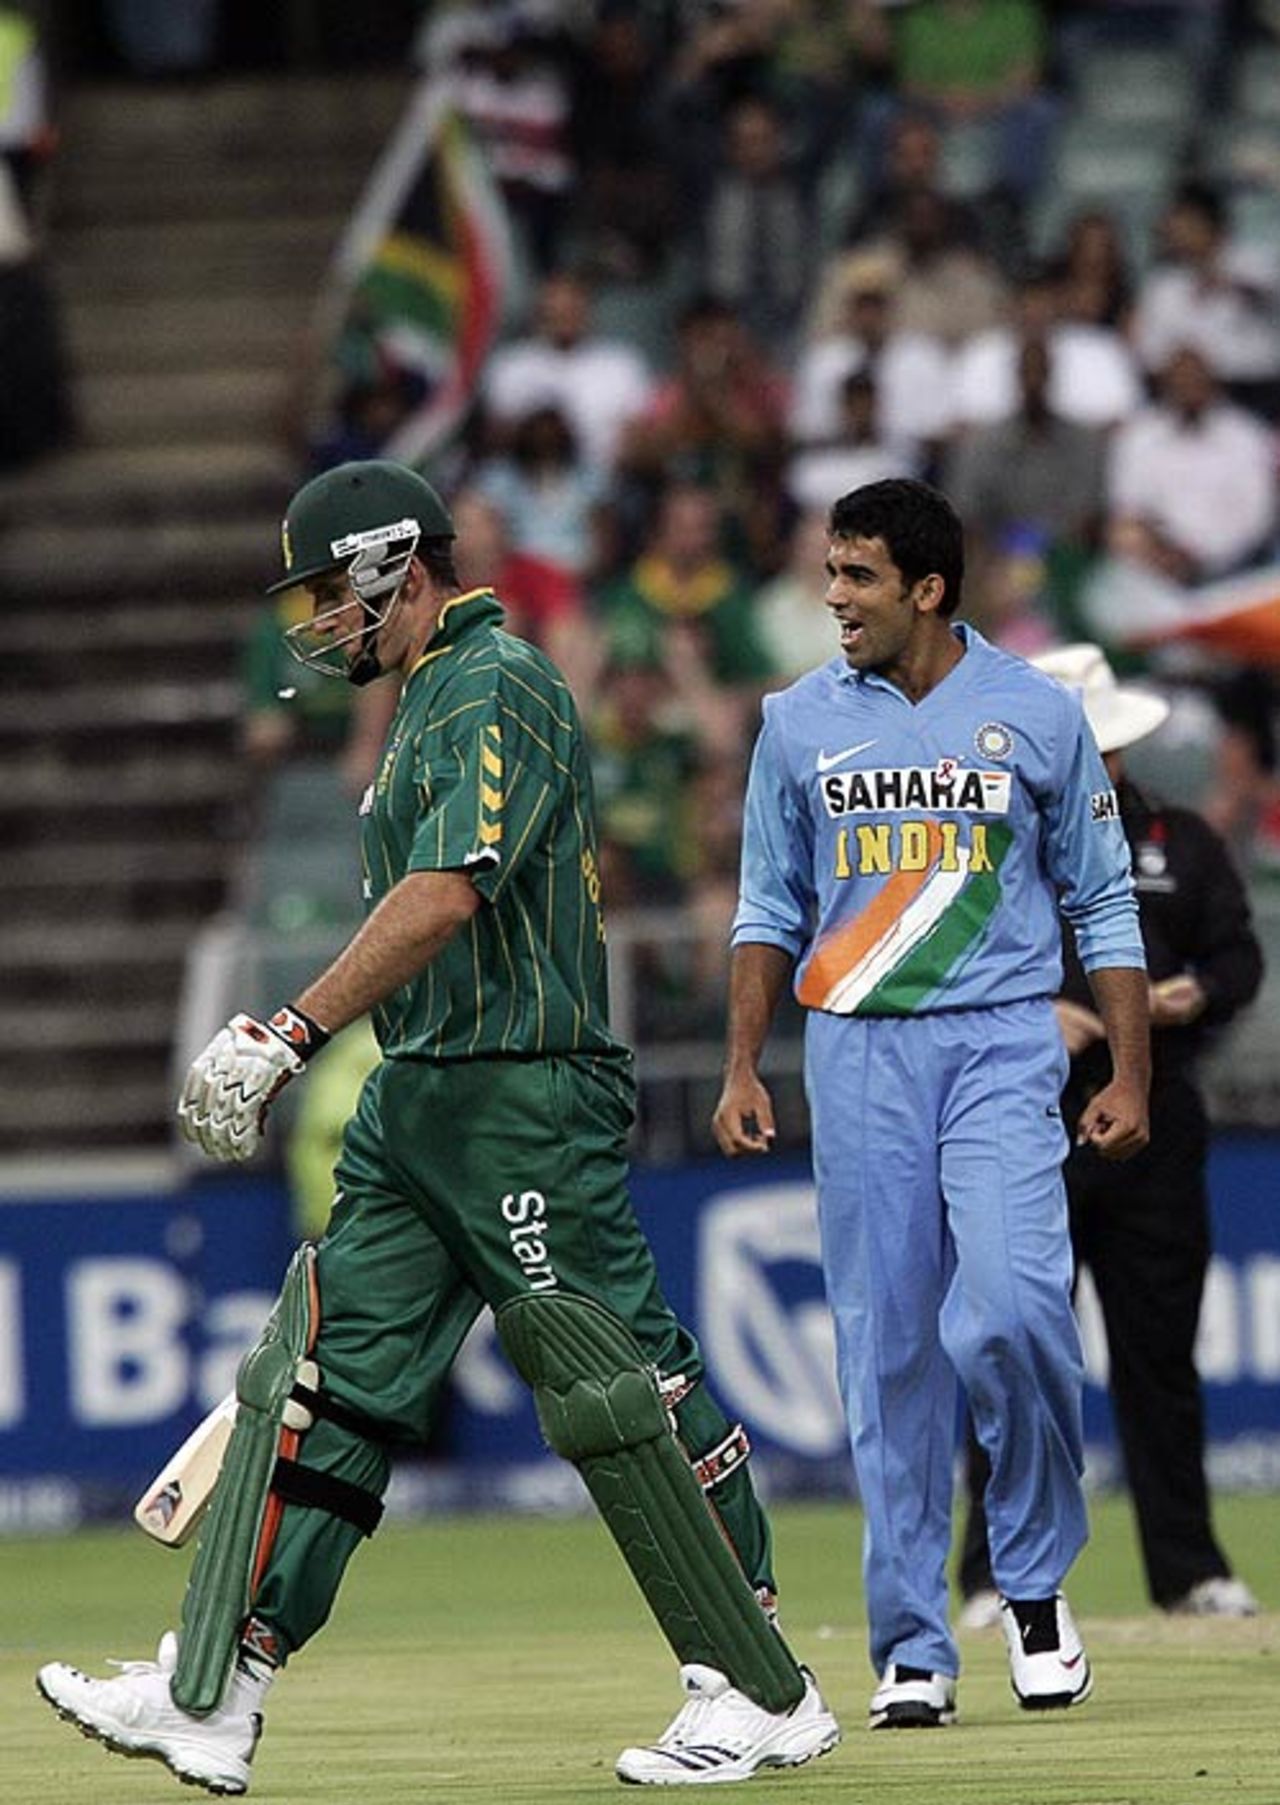 Zaheer Khan dismissed Graeme Smith ... again, South Africa v India, Pro20, Johannesburg, December 1, 2006